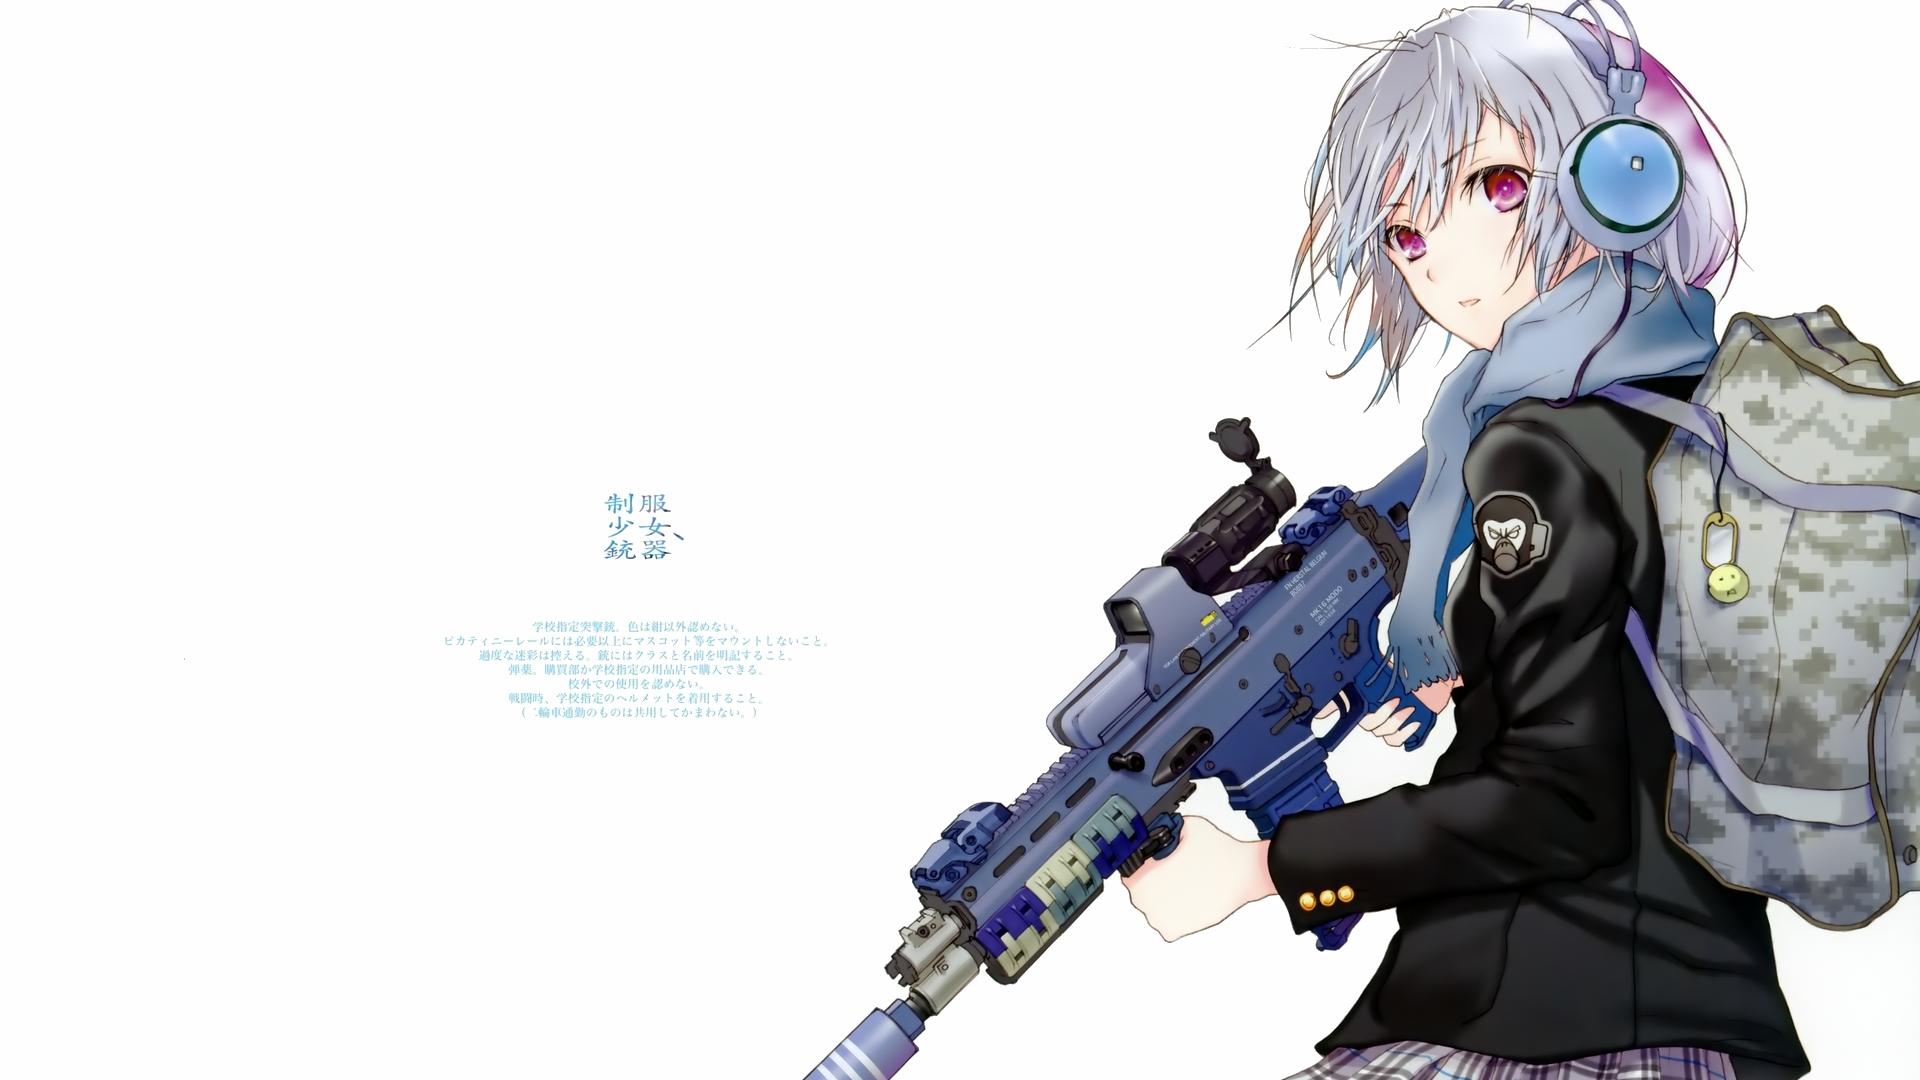 Anime sniper girl Wallpaper